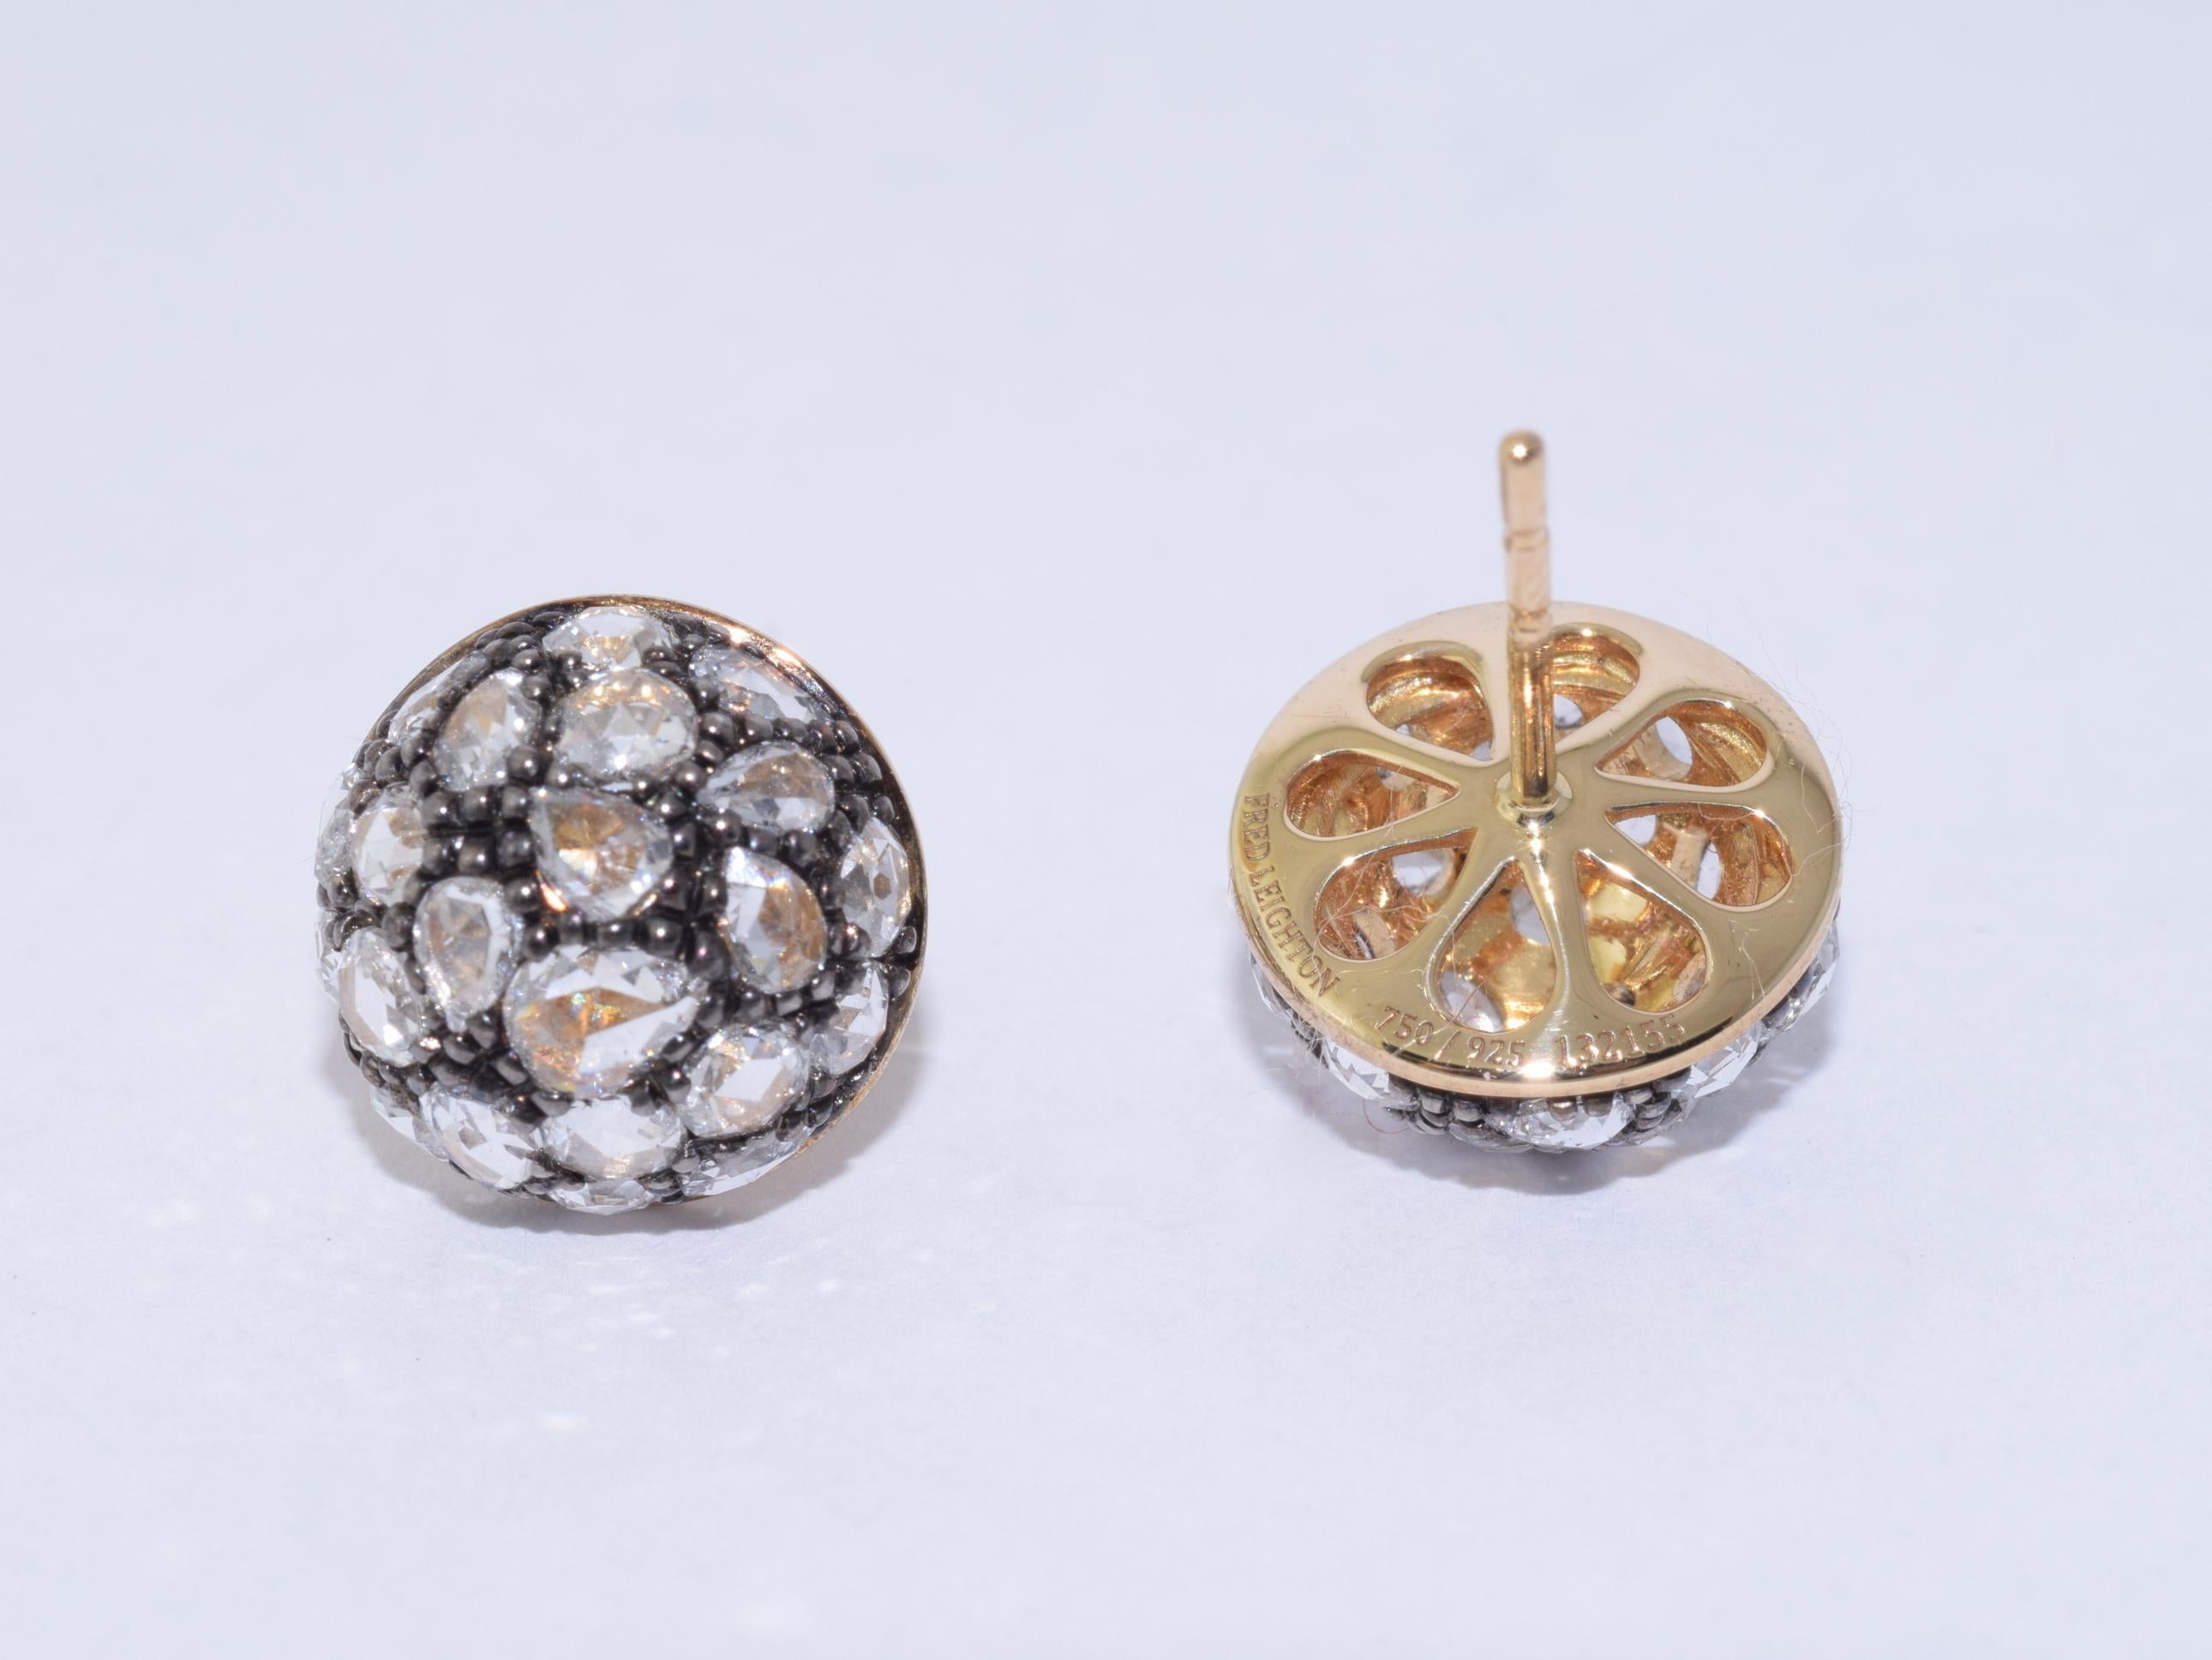 Diamanten im Rosenschliff mit einem Gesamtgewicht von ca. 1,82 Karat sind in Bombé-Silberfassungen aus 18 Karat Gelbgold gefasst. Unterzeichnet Fred Leighton. Die Ohrringe messen 7/16 Zoll rund und 1/4 Zoll hoch.

Fred Leighton ist bekannt für seine